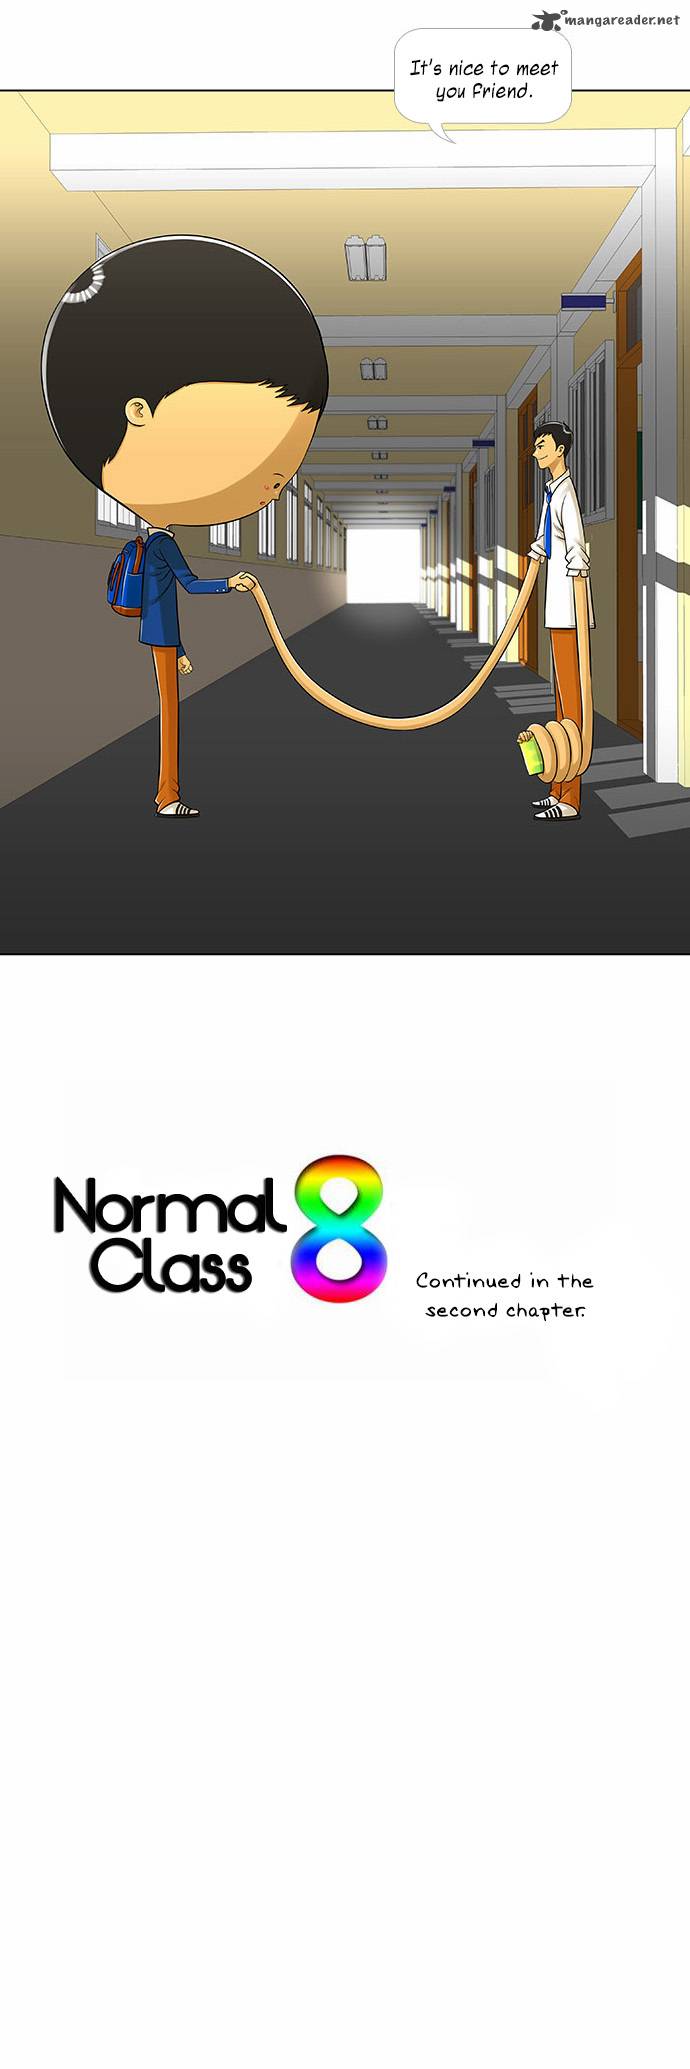 Normal Class 8 1 25